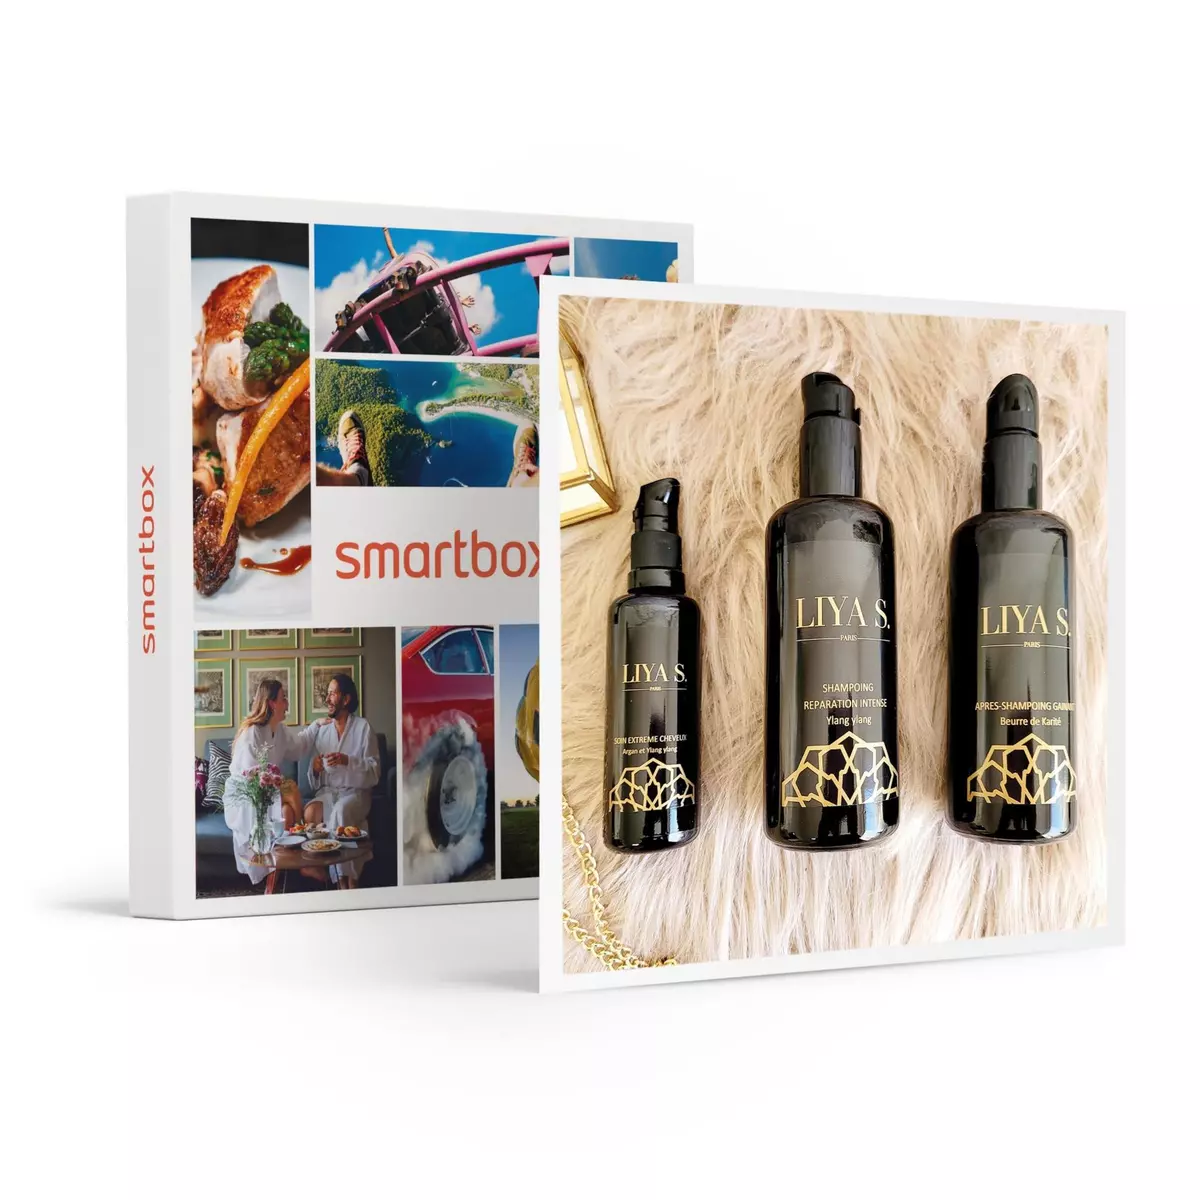 Smartbox Coffret de 3 produits bio et naturels issus de plantes pour cheveux secs - Coffret Cadeau Bien-être